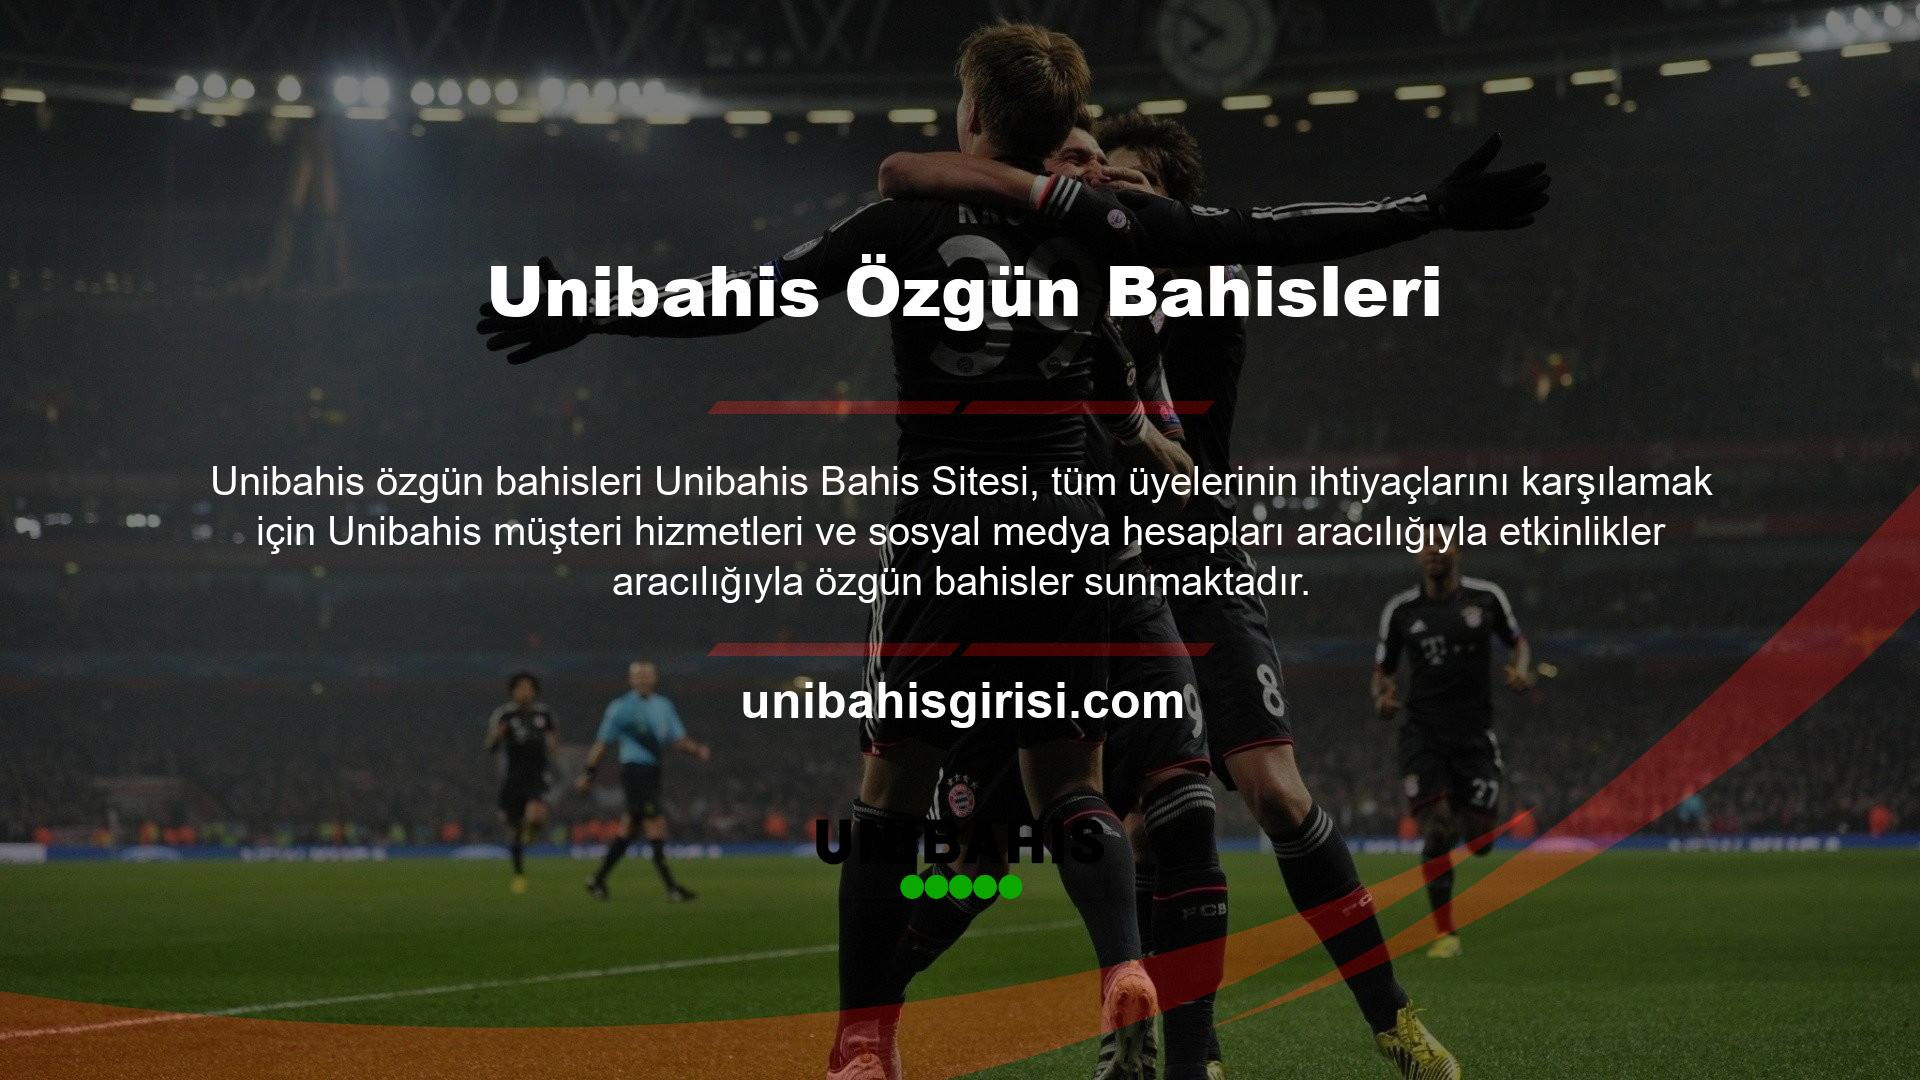 Unibahis yasal casino sitesi Türkiye'de yasal bir casino platformudur ancak Türk bahisçiler arasında popüler değildir